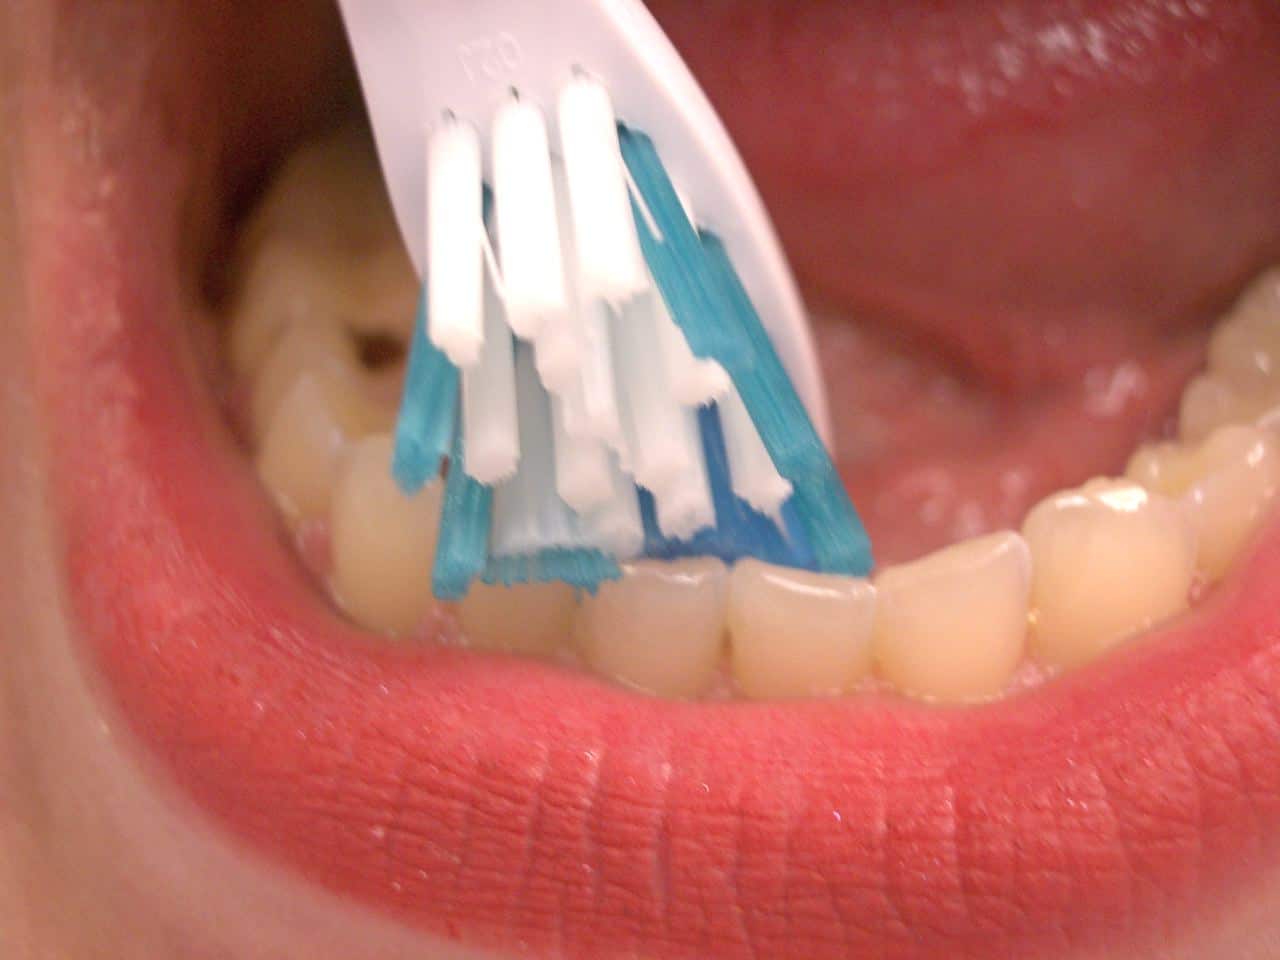 imgpsh fullsize anim 6 - Oral Hygiene